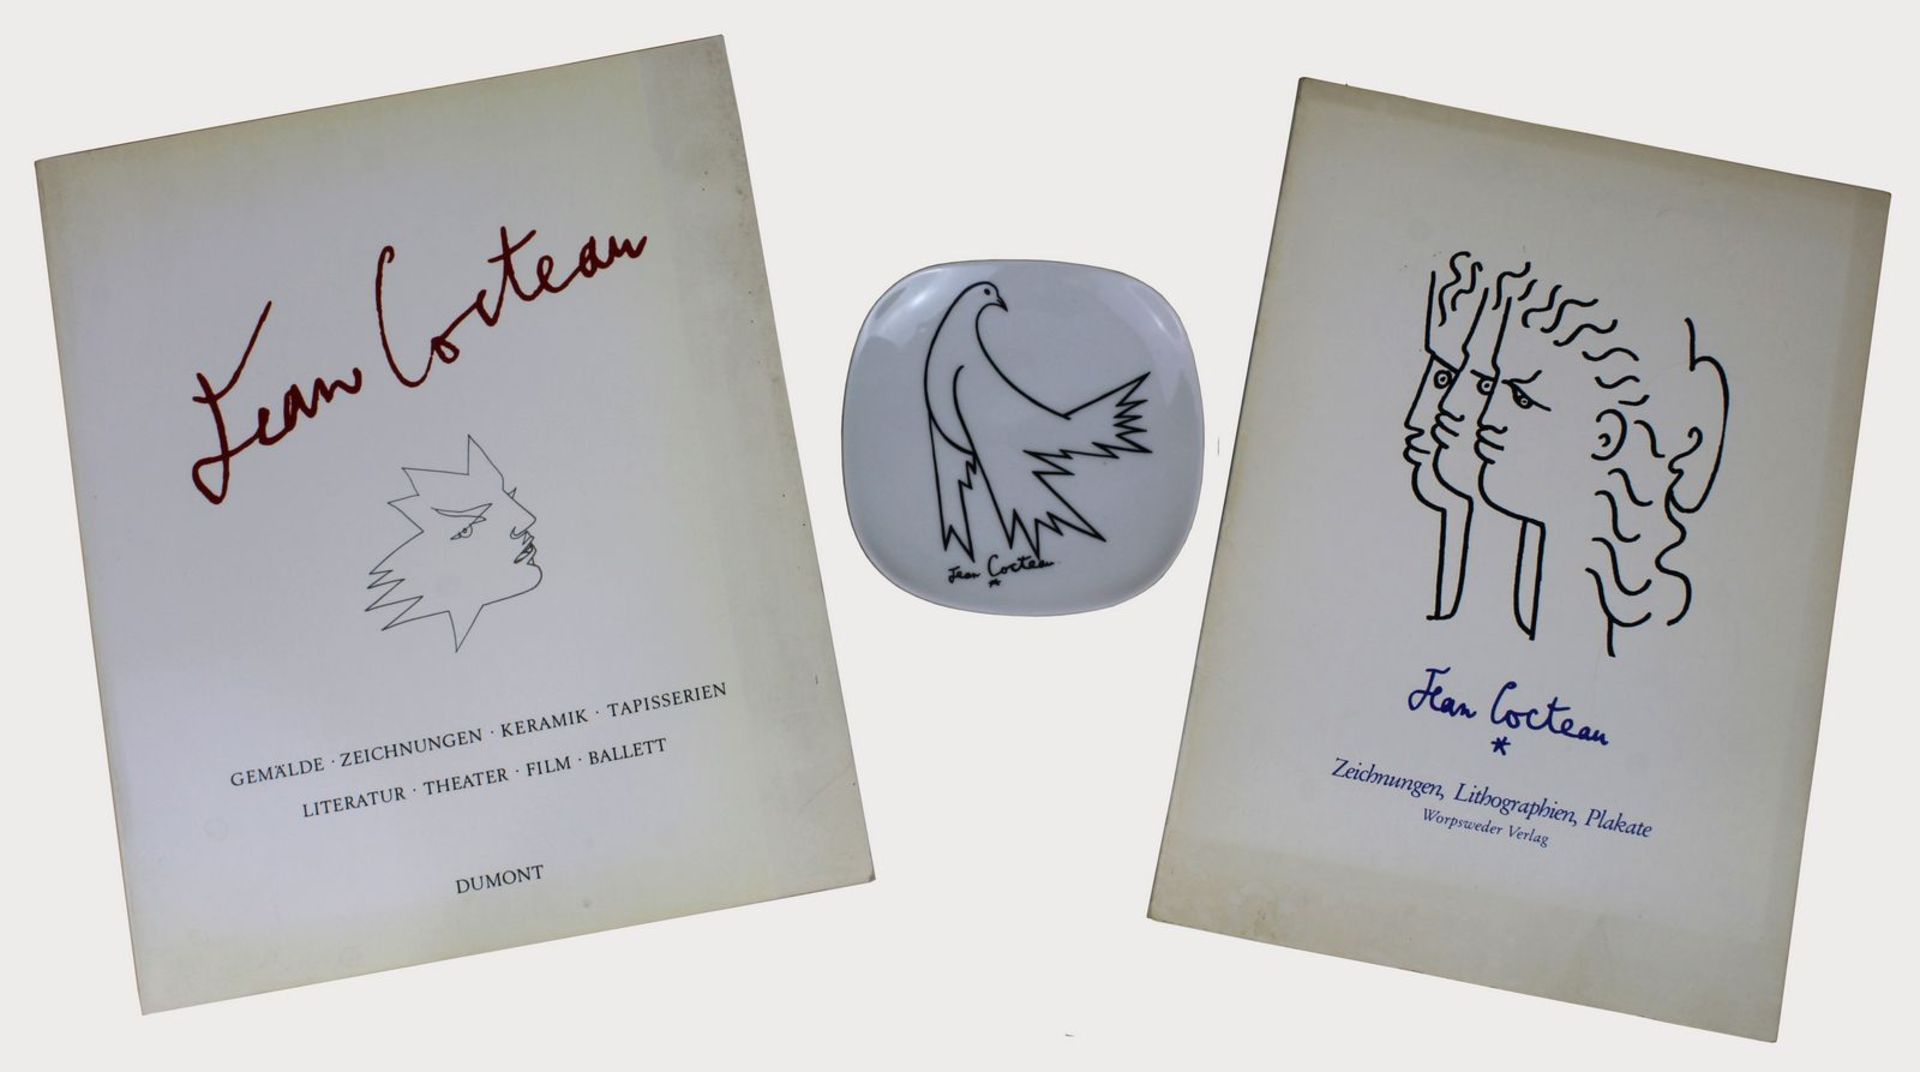 2 Bücher und 1 Porzellanteller von Jean Cocteau (1889 - 1963), 1 Buch: "Zeichnungen Lithographien,